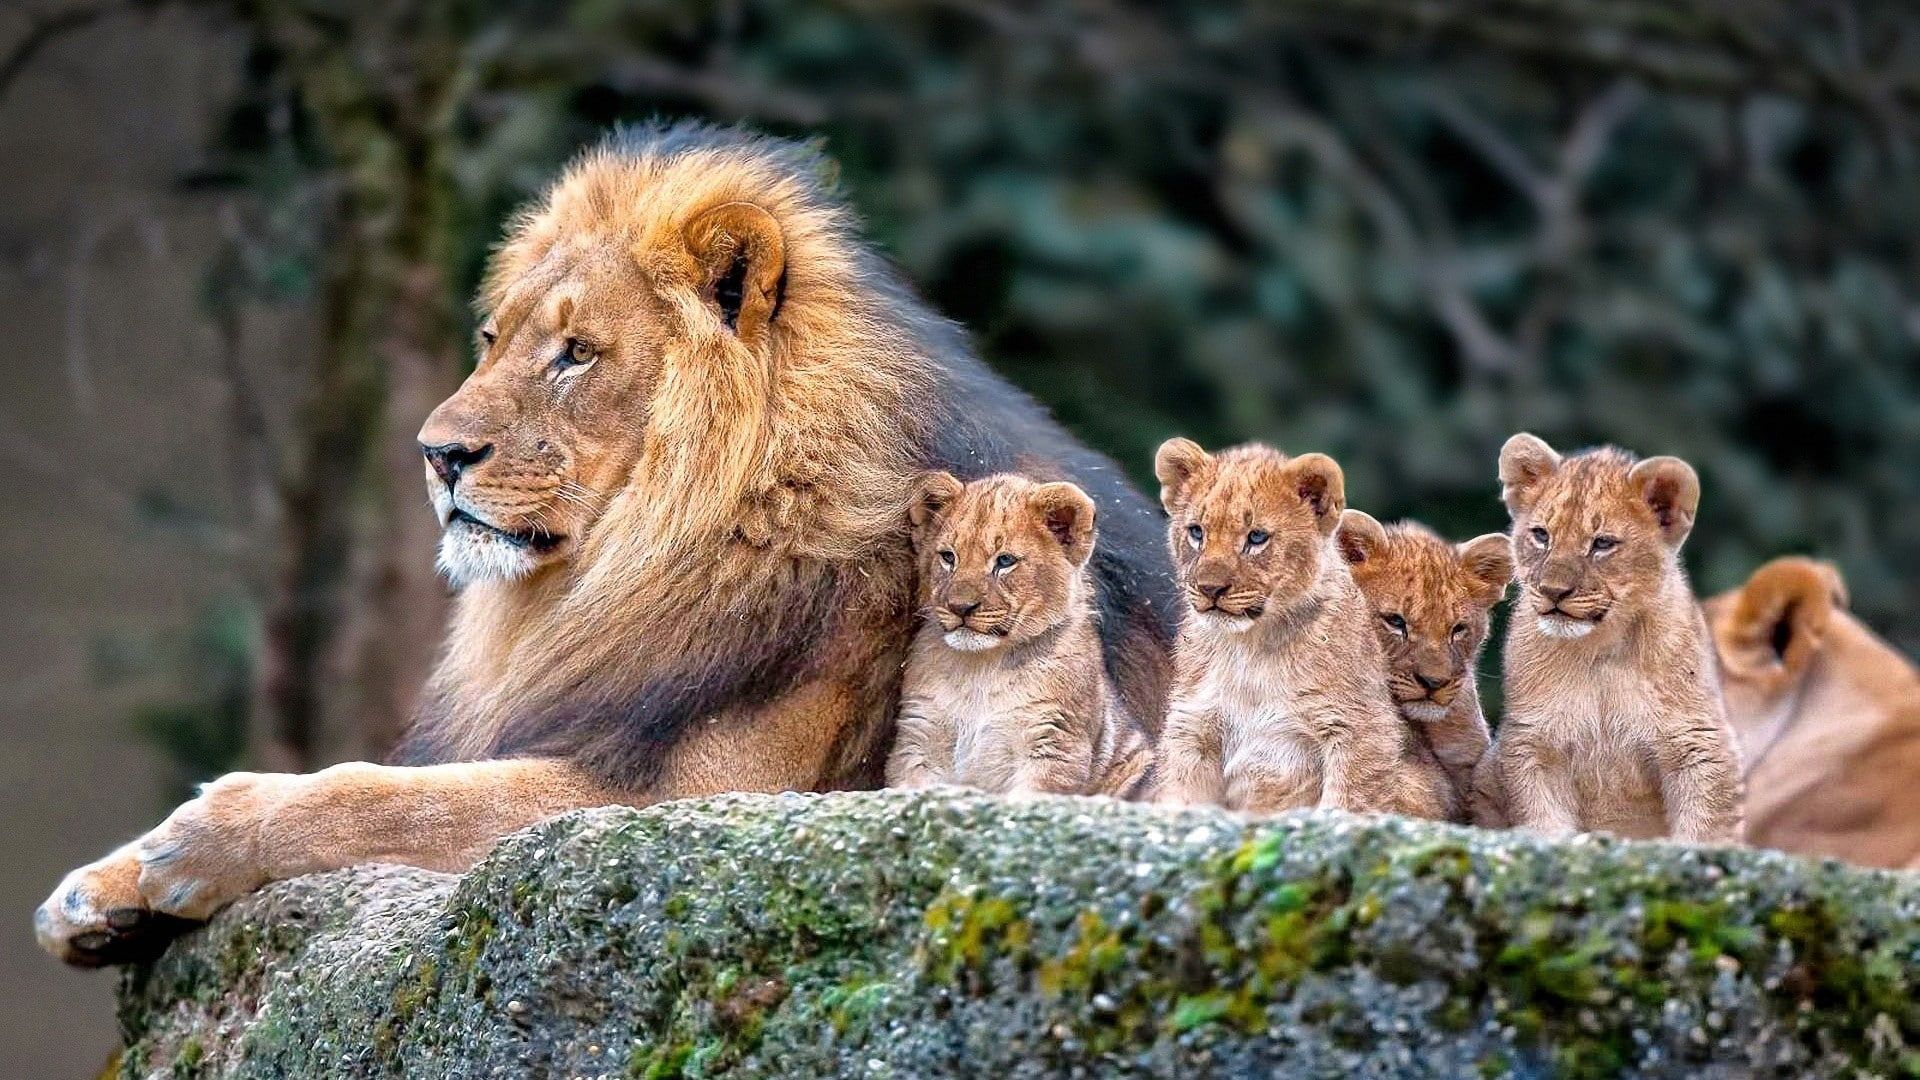 animals #mammals #lion #cubs baby animals P #wallpaper #hdwallpaper #desktop. Baby animals, Animals, Cute animals